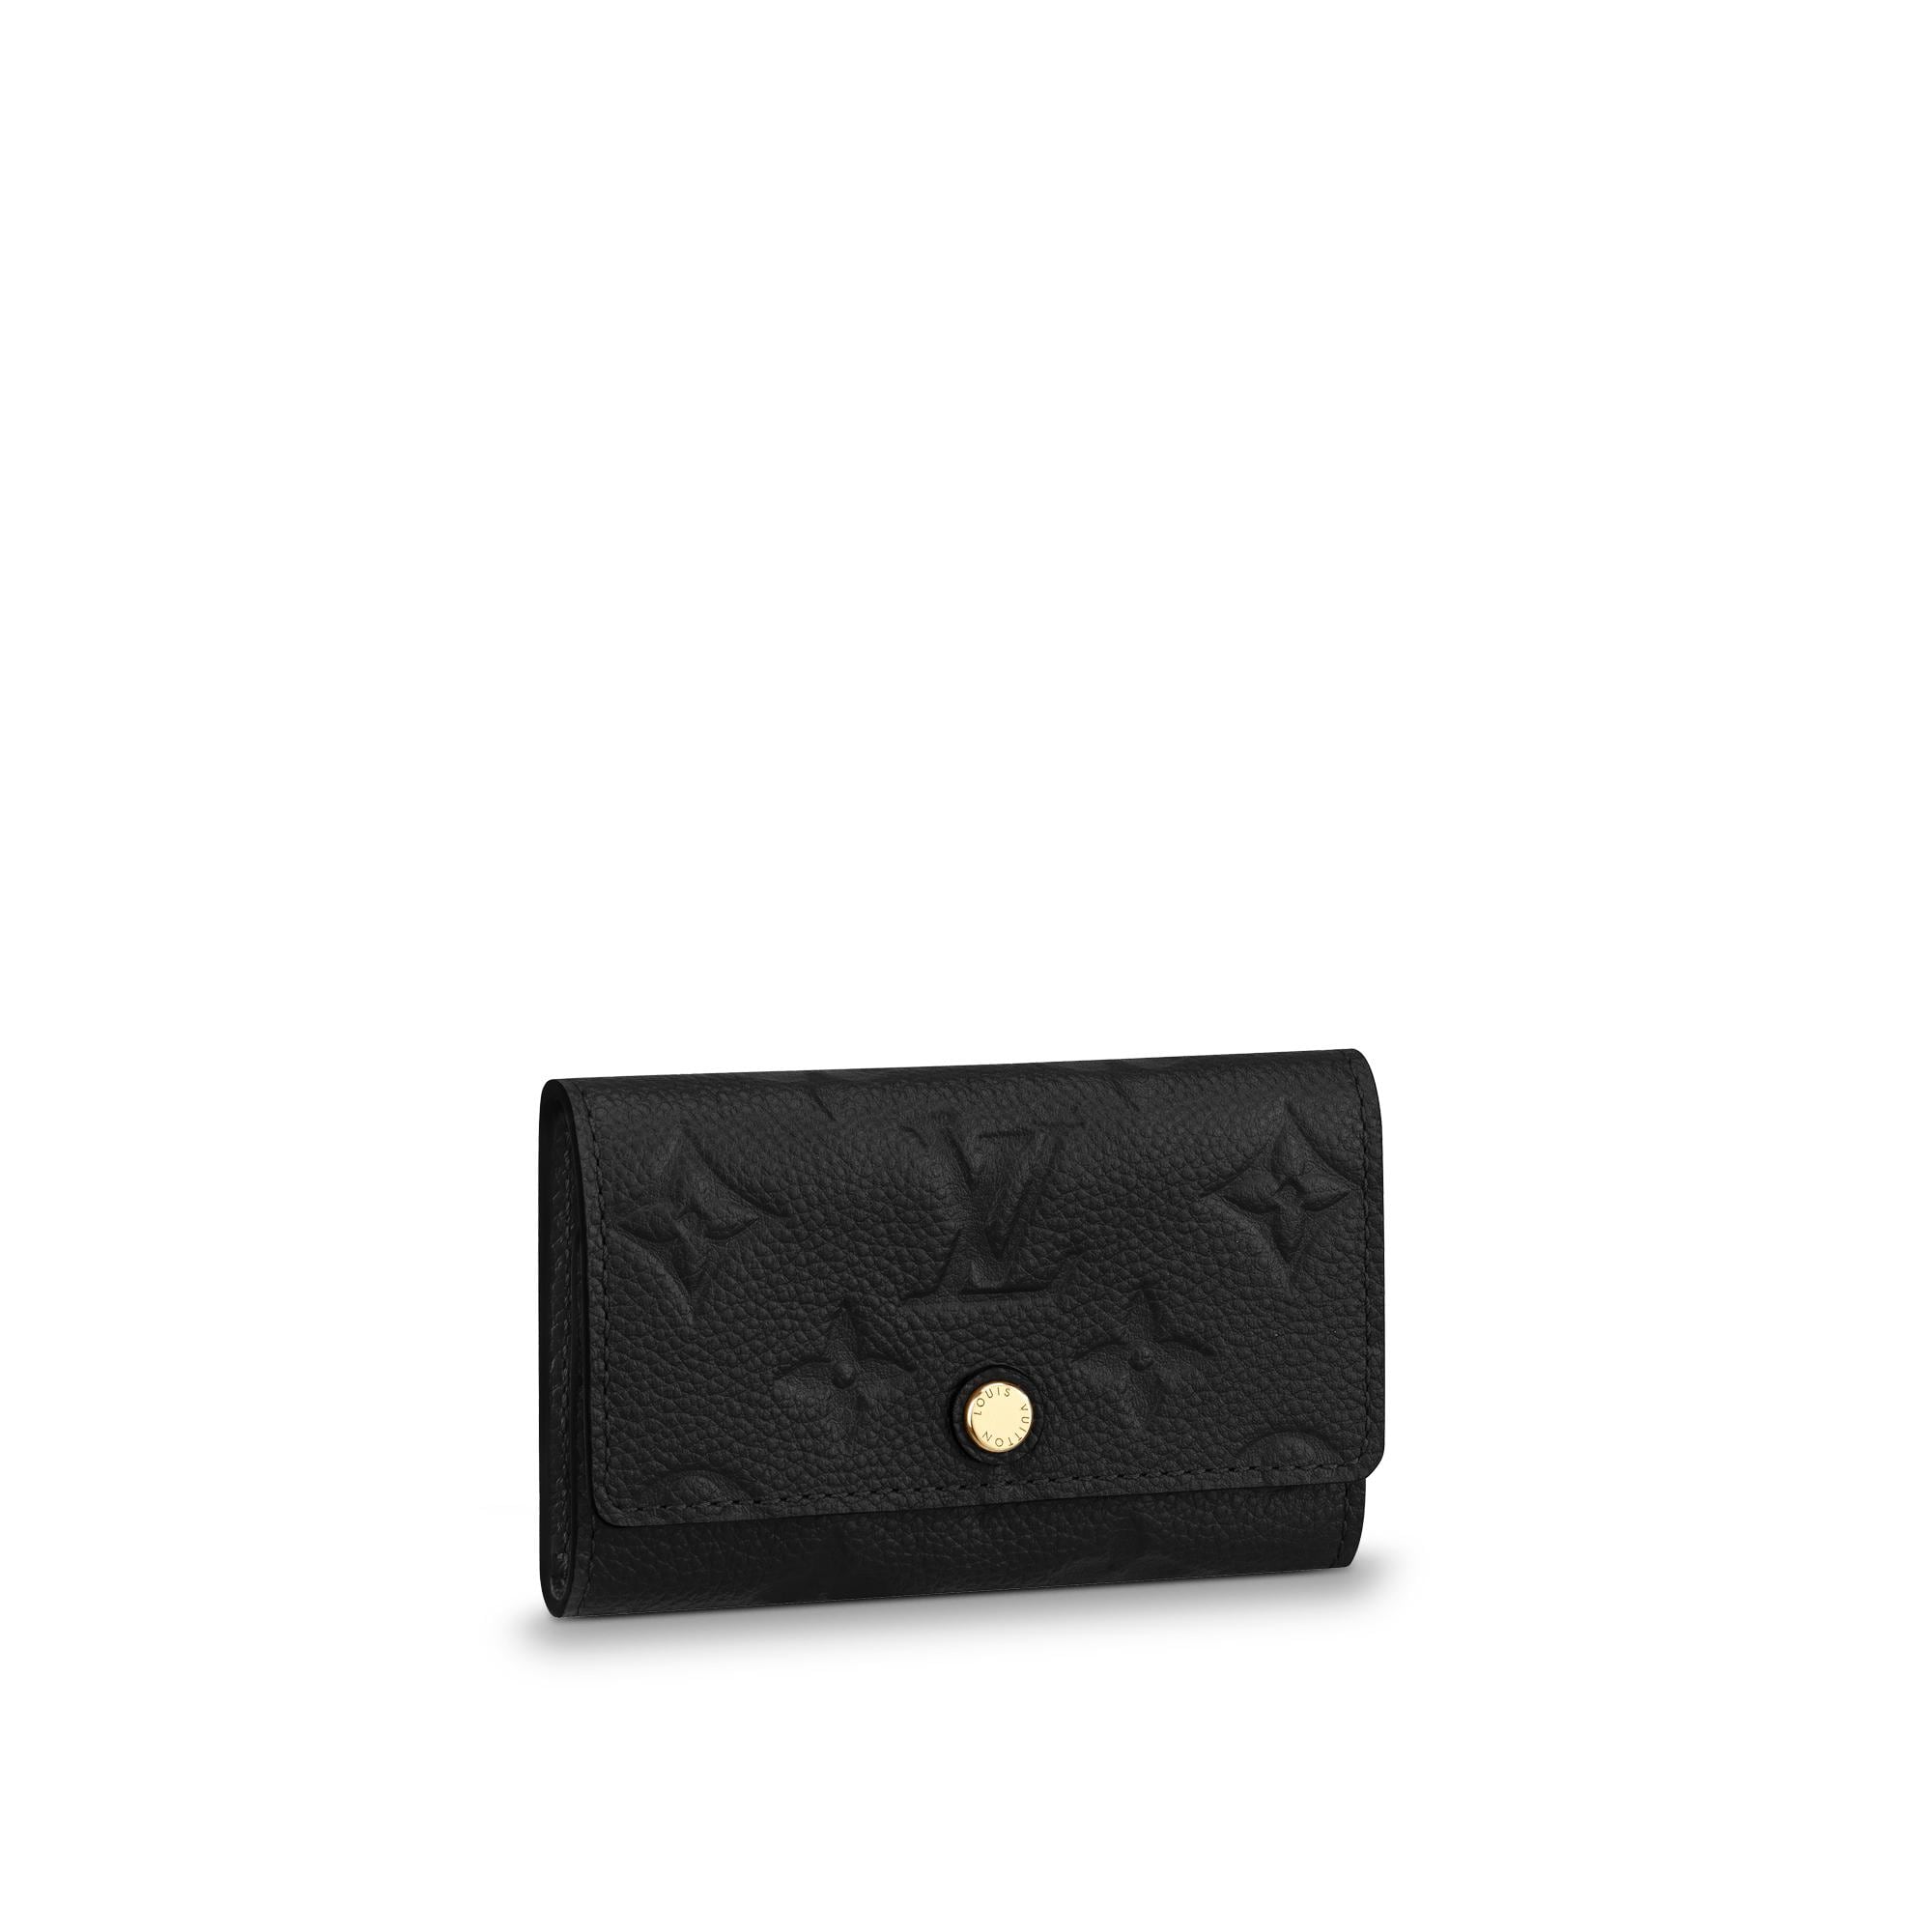 Louis Vuitton 6 Key Holder Monogram Empreinte Leather in Black – Accessories M64421